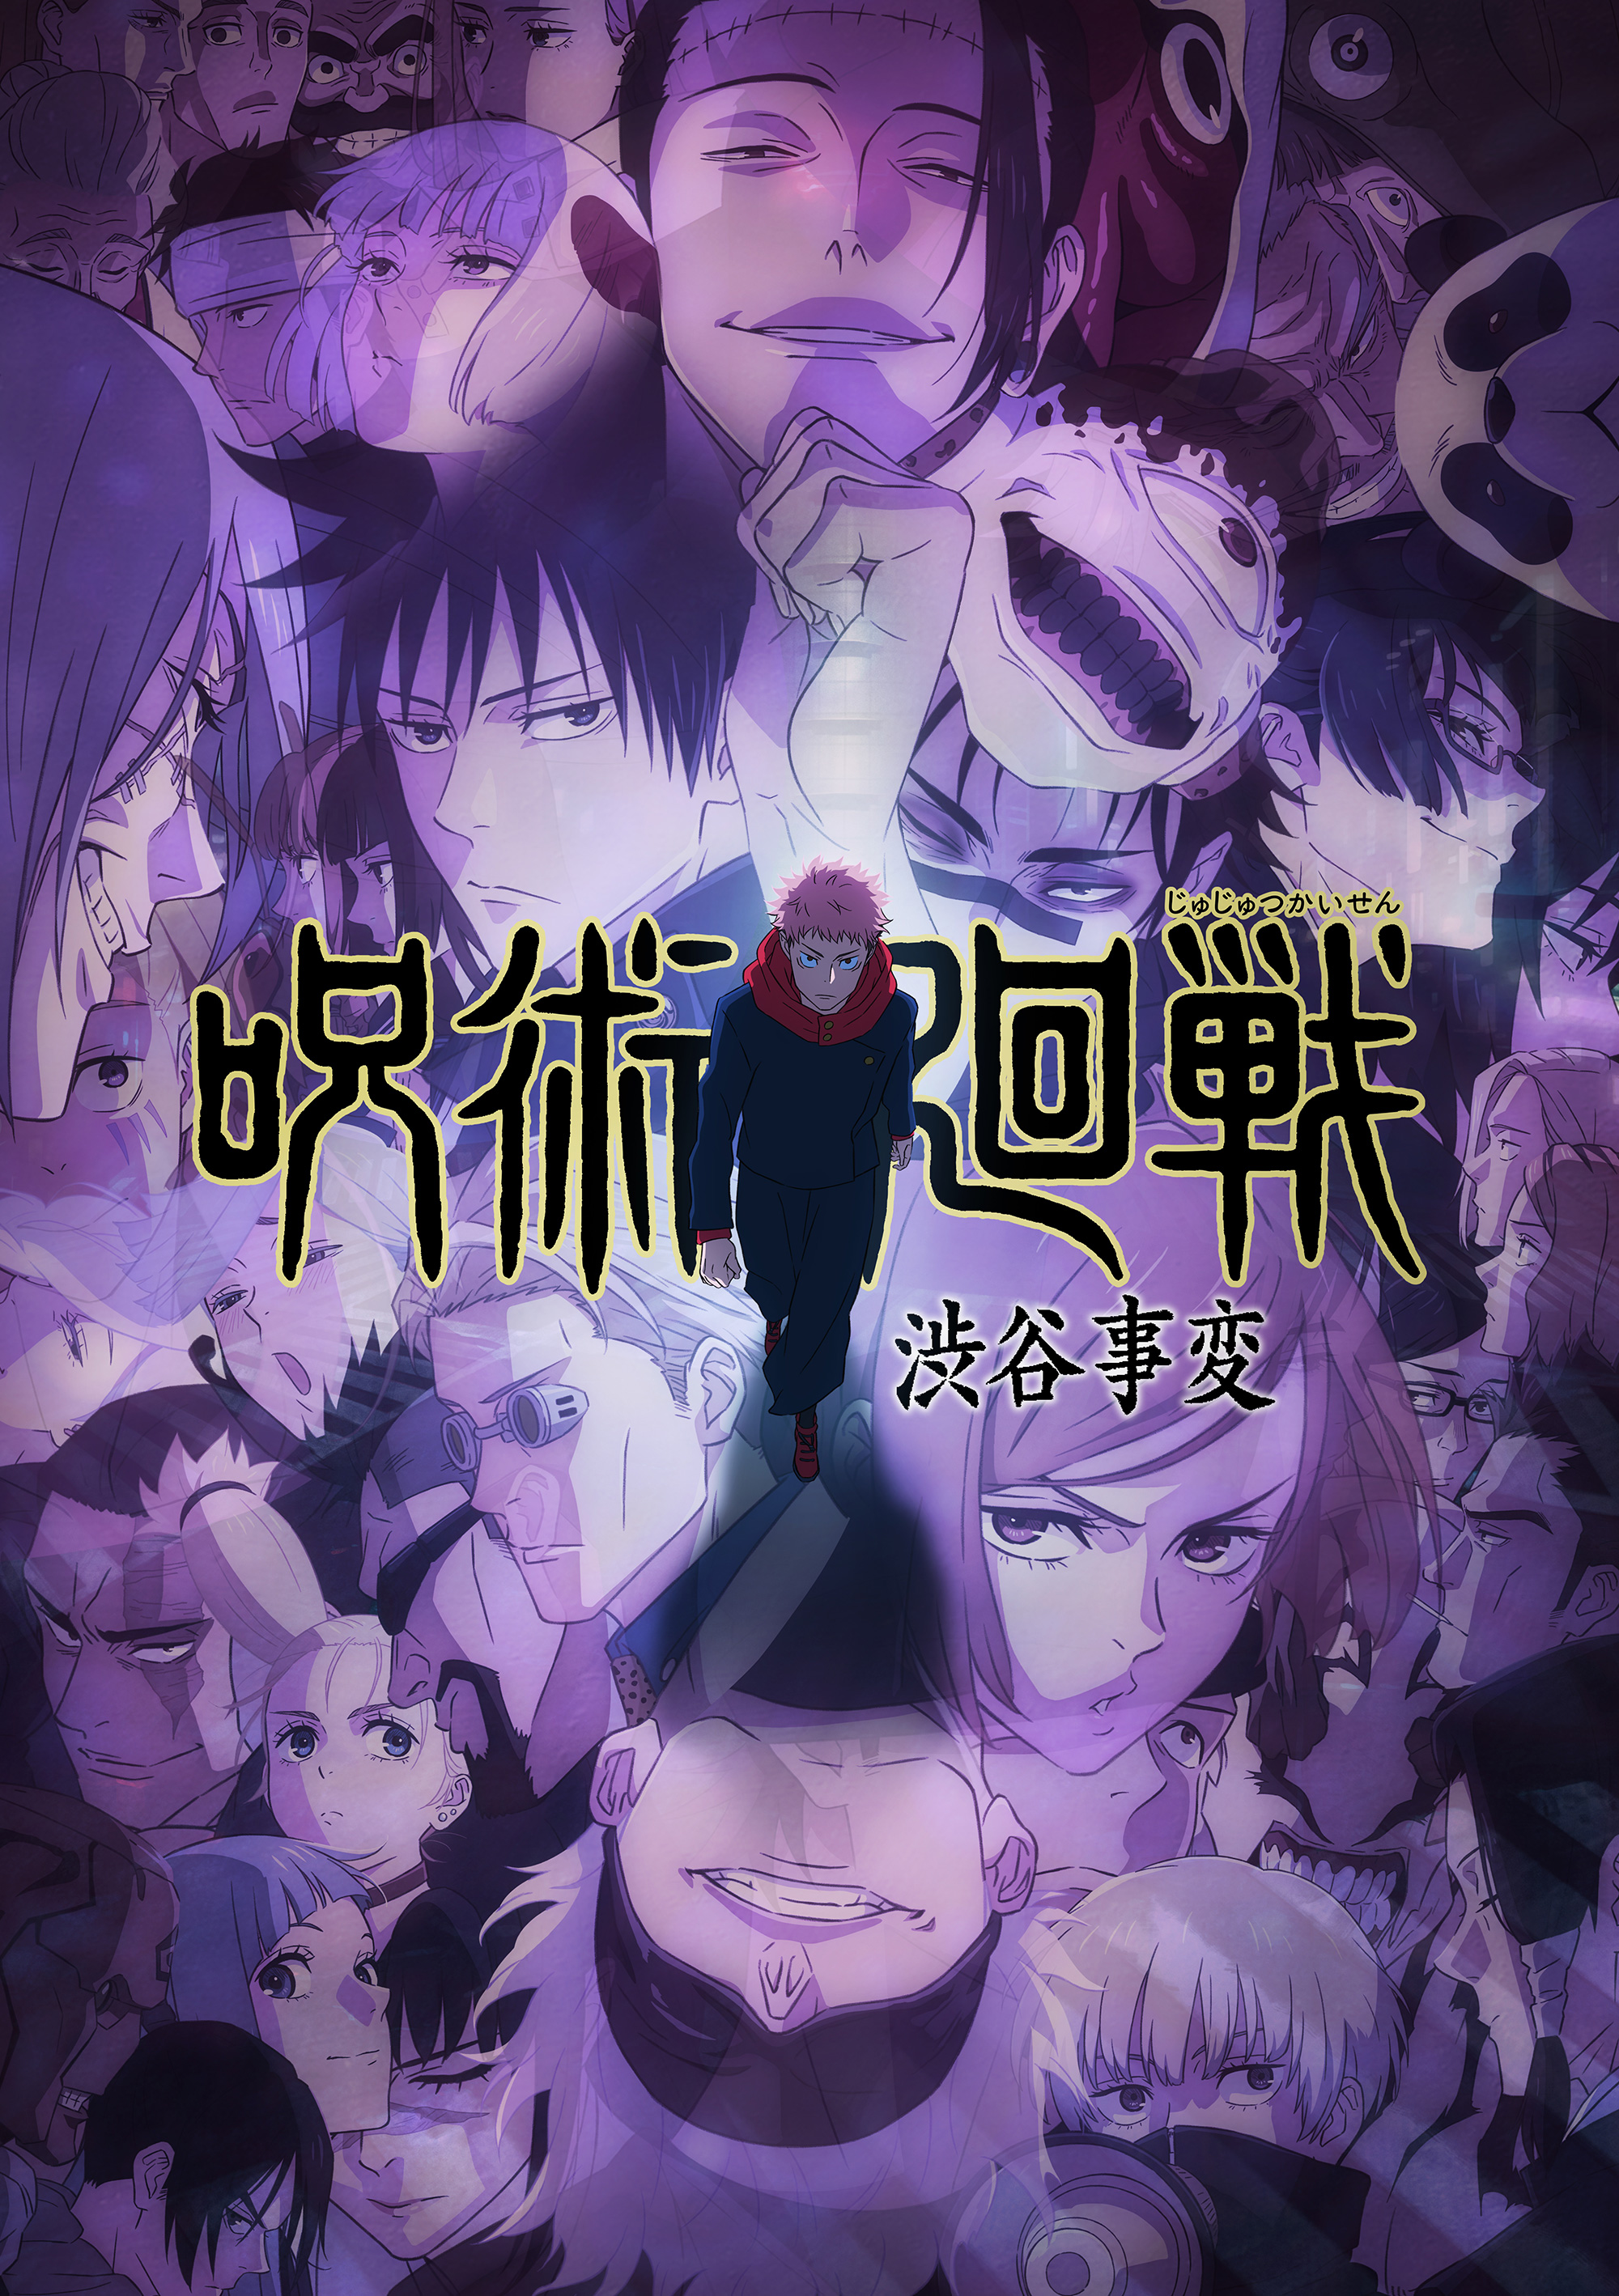 JUJUTSU KAISEN Season 2 New Key Visual : r/anime